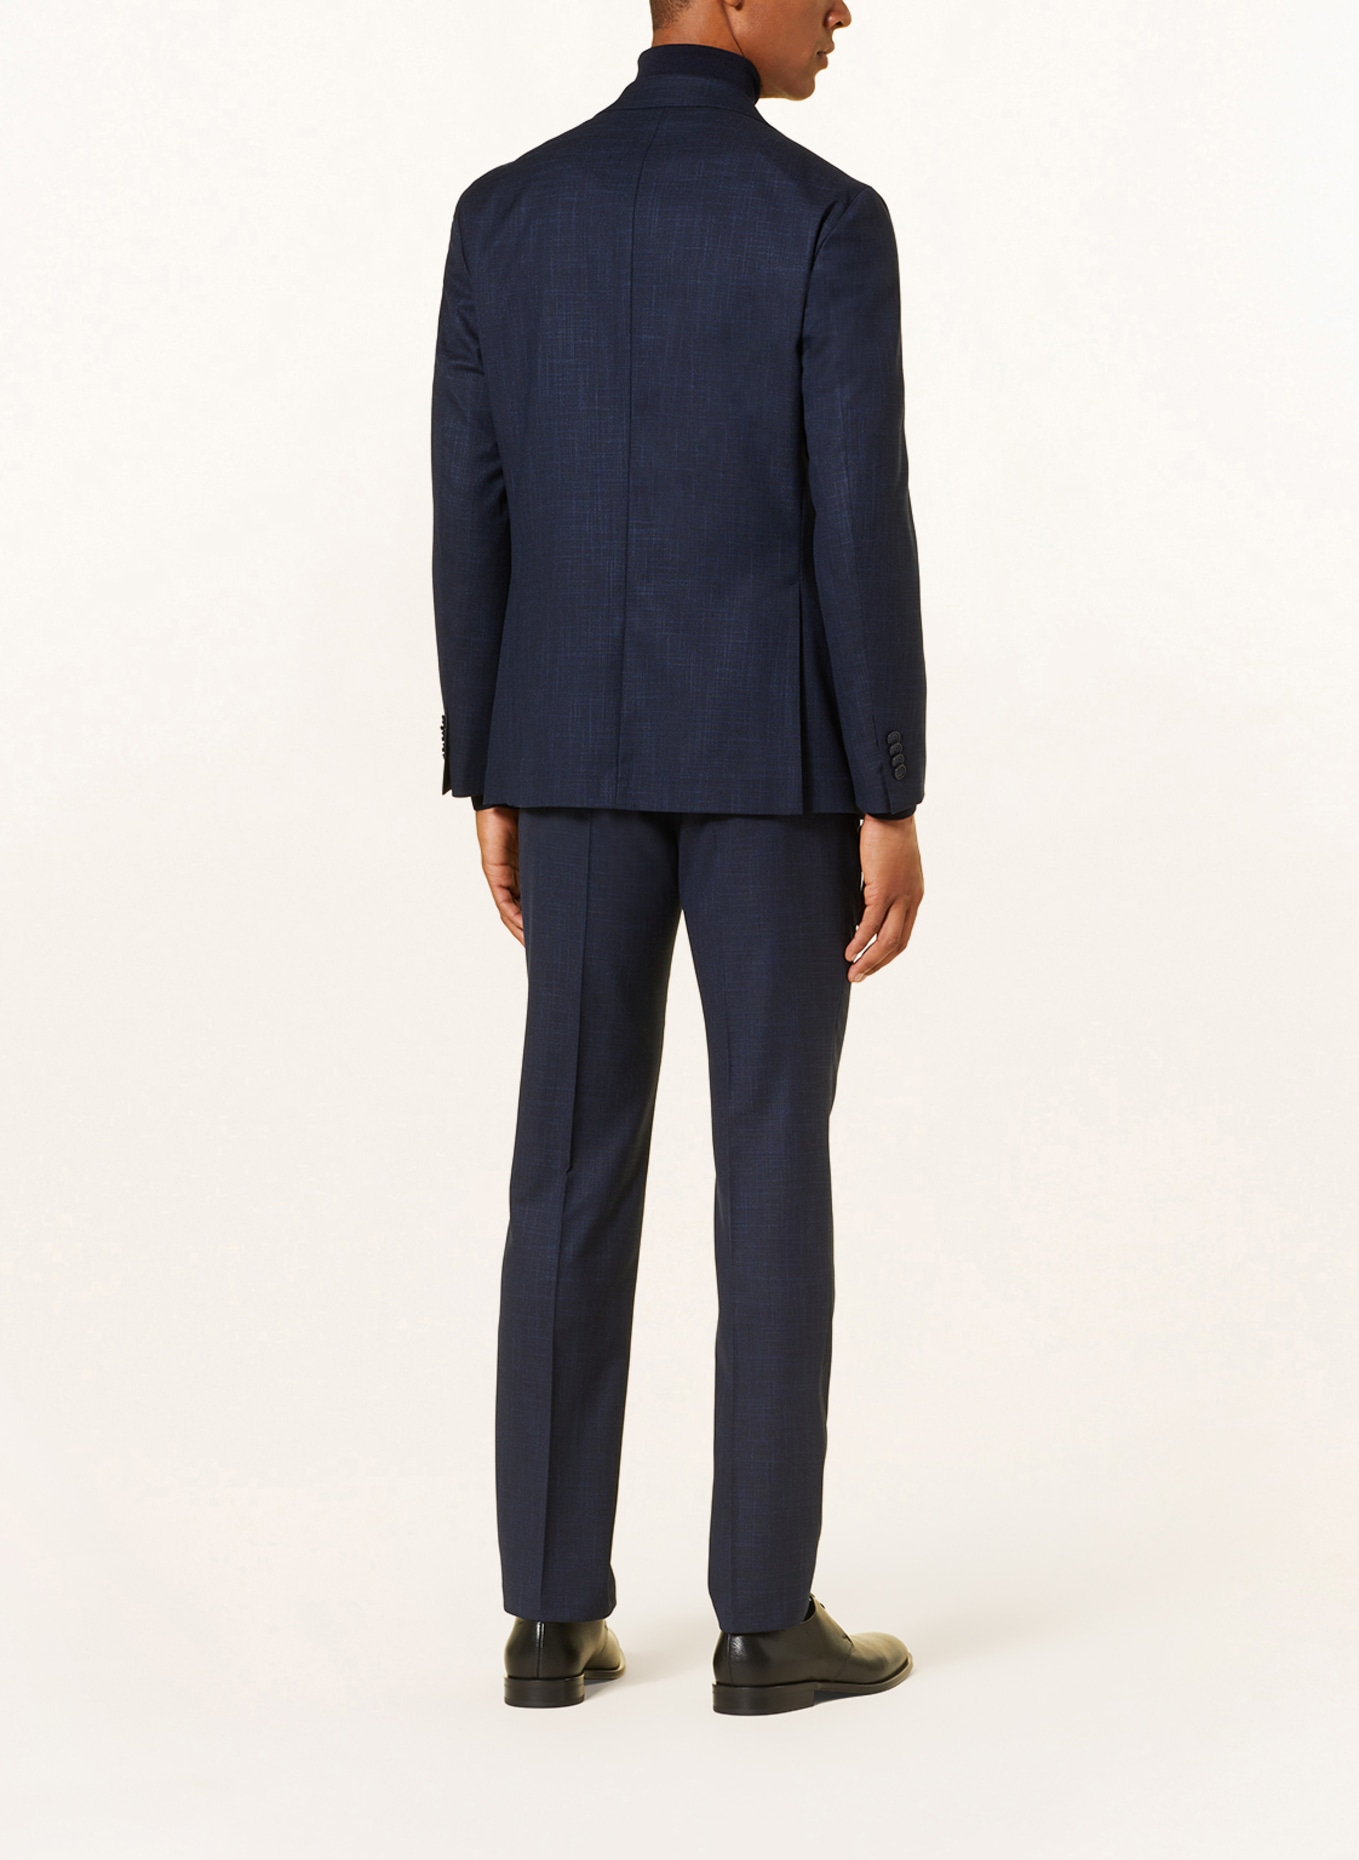 DIGEL Suit jacket EDWARD modern fit, Color: 22 BLAU (Image 3)